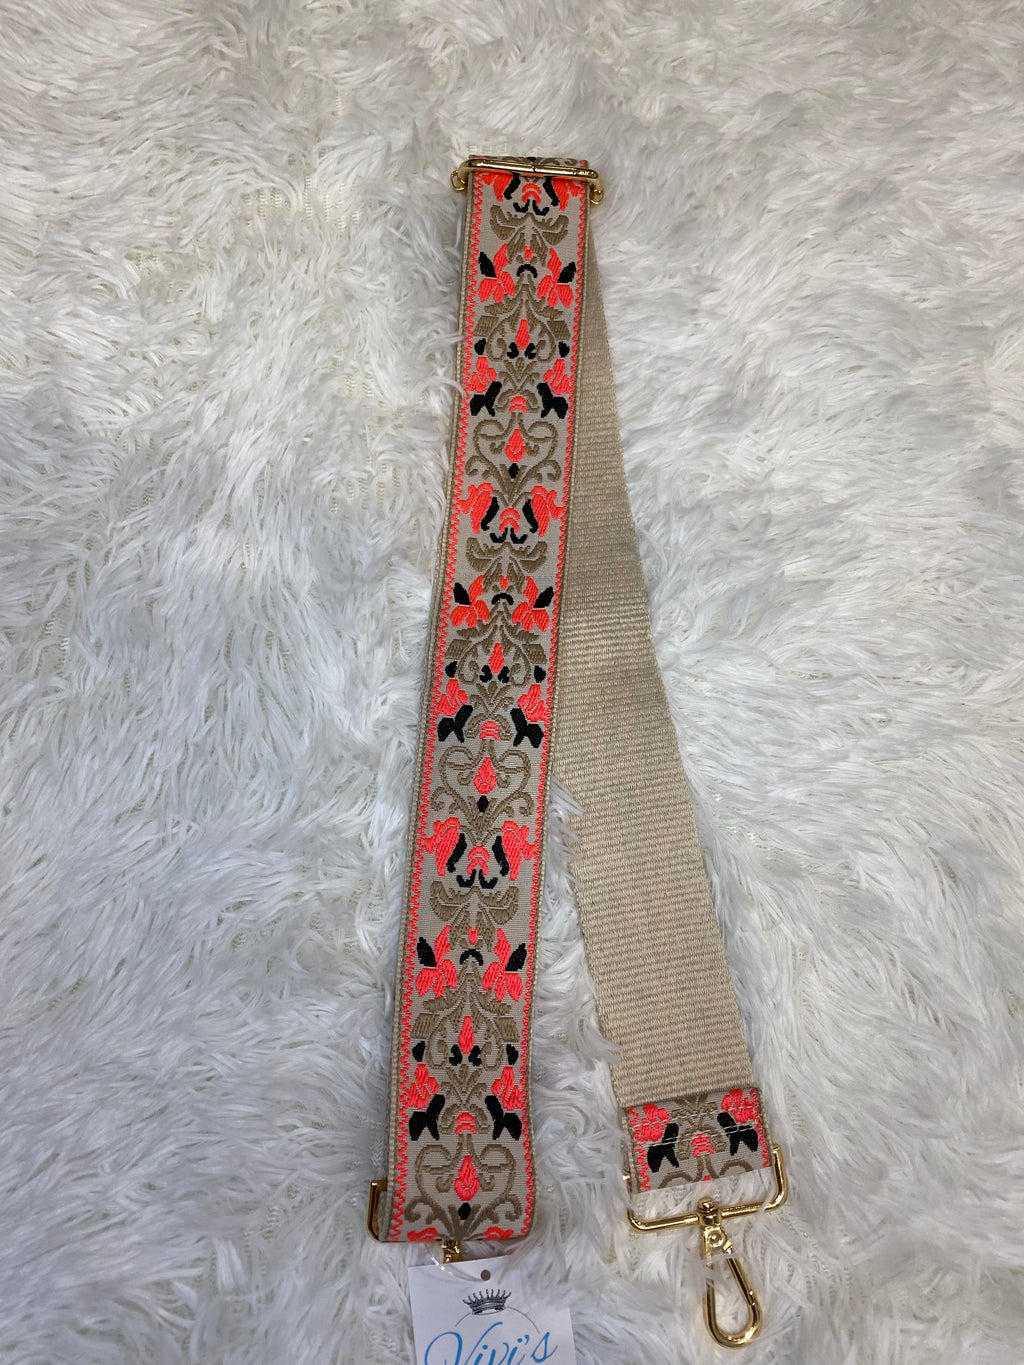 Ahdorned Floral Embroidered Adjustable Strap